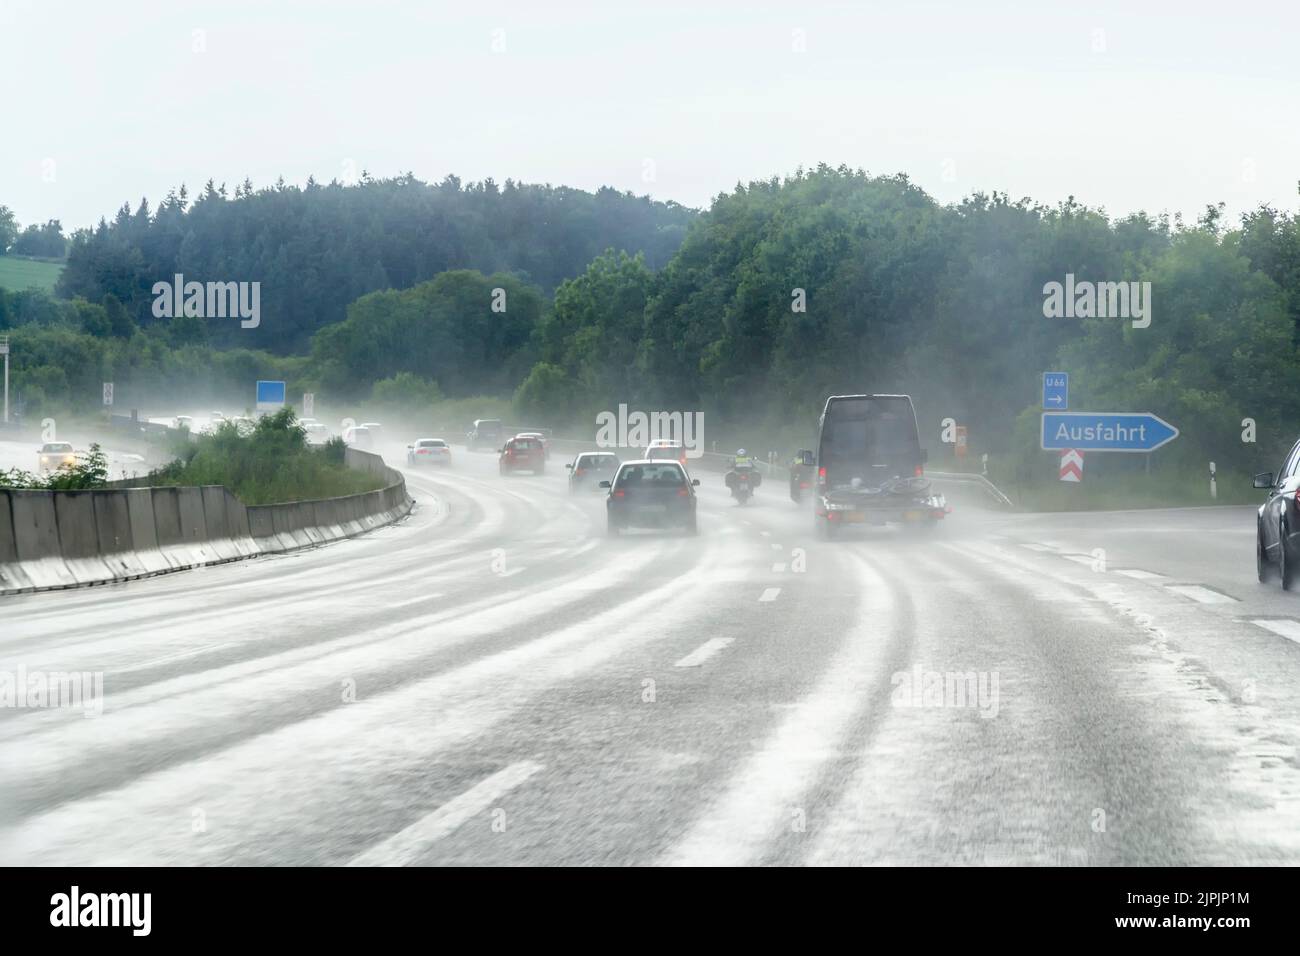 highway, rainy, schlechte sicht, highways, motorway, motorways, rain, raining Stock Photo